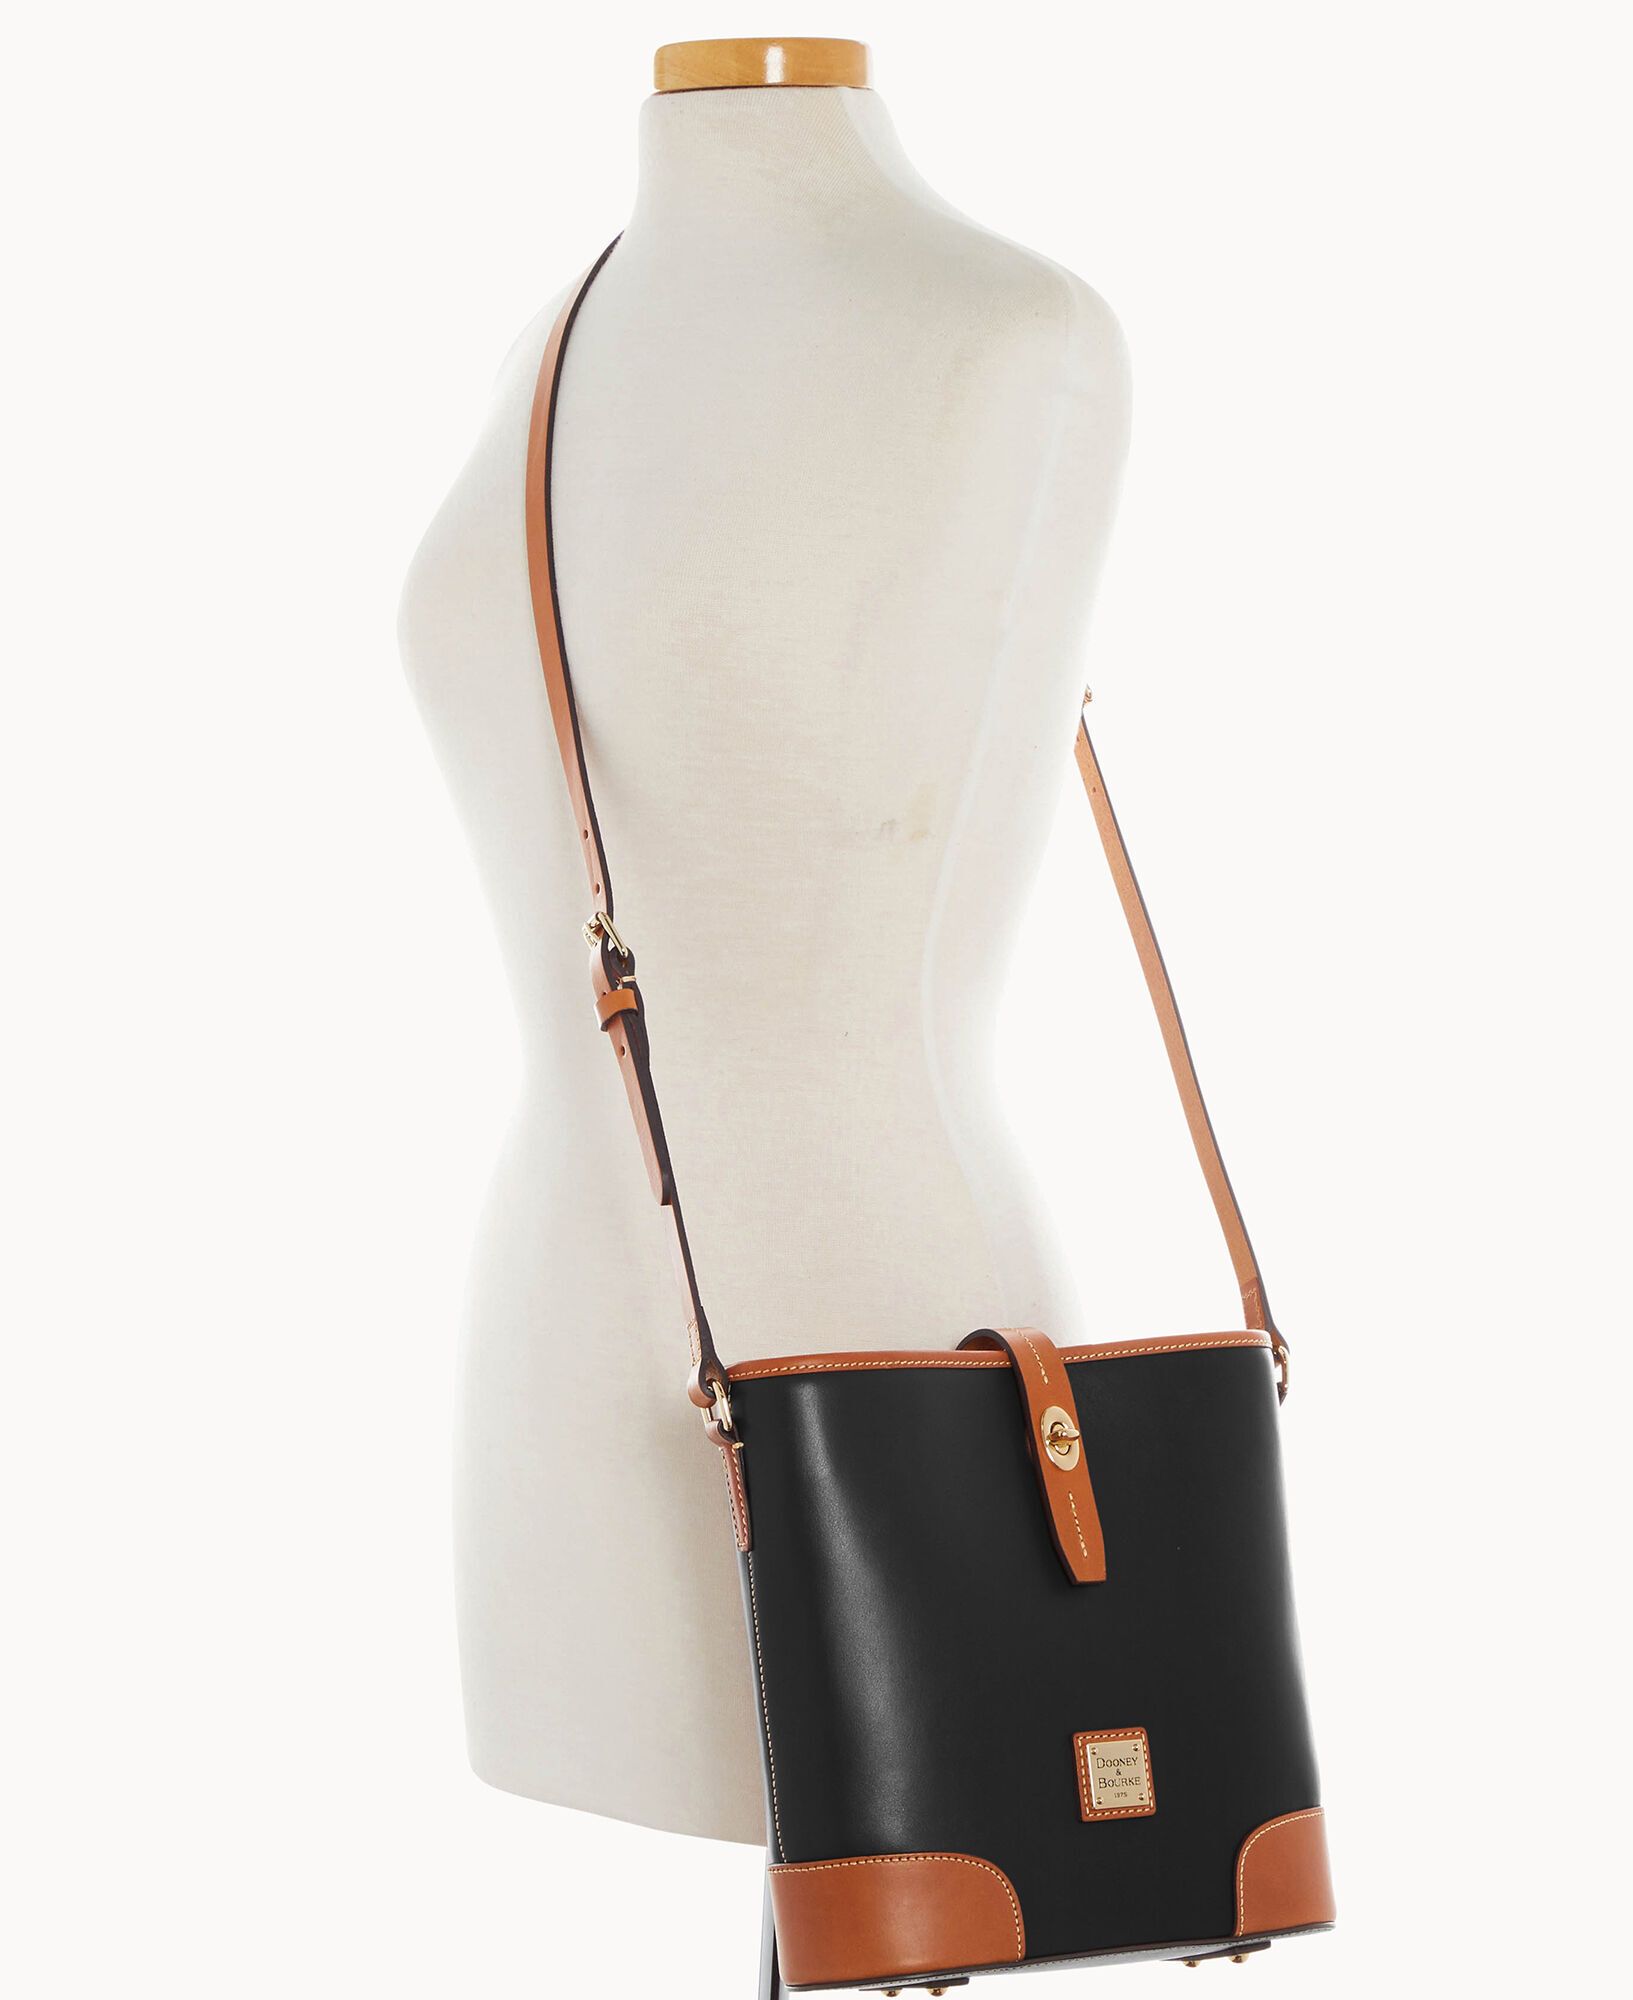 Dooney & Bourke Wexford Leather Crossbody Bucket Shoulder Bag